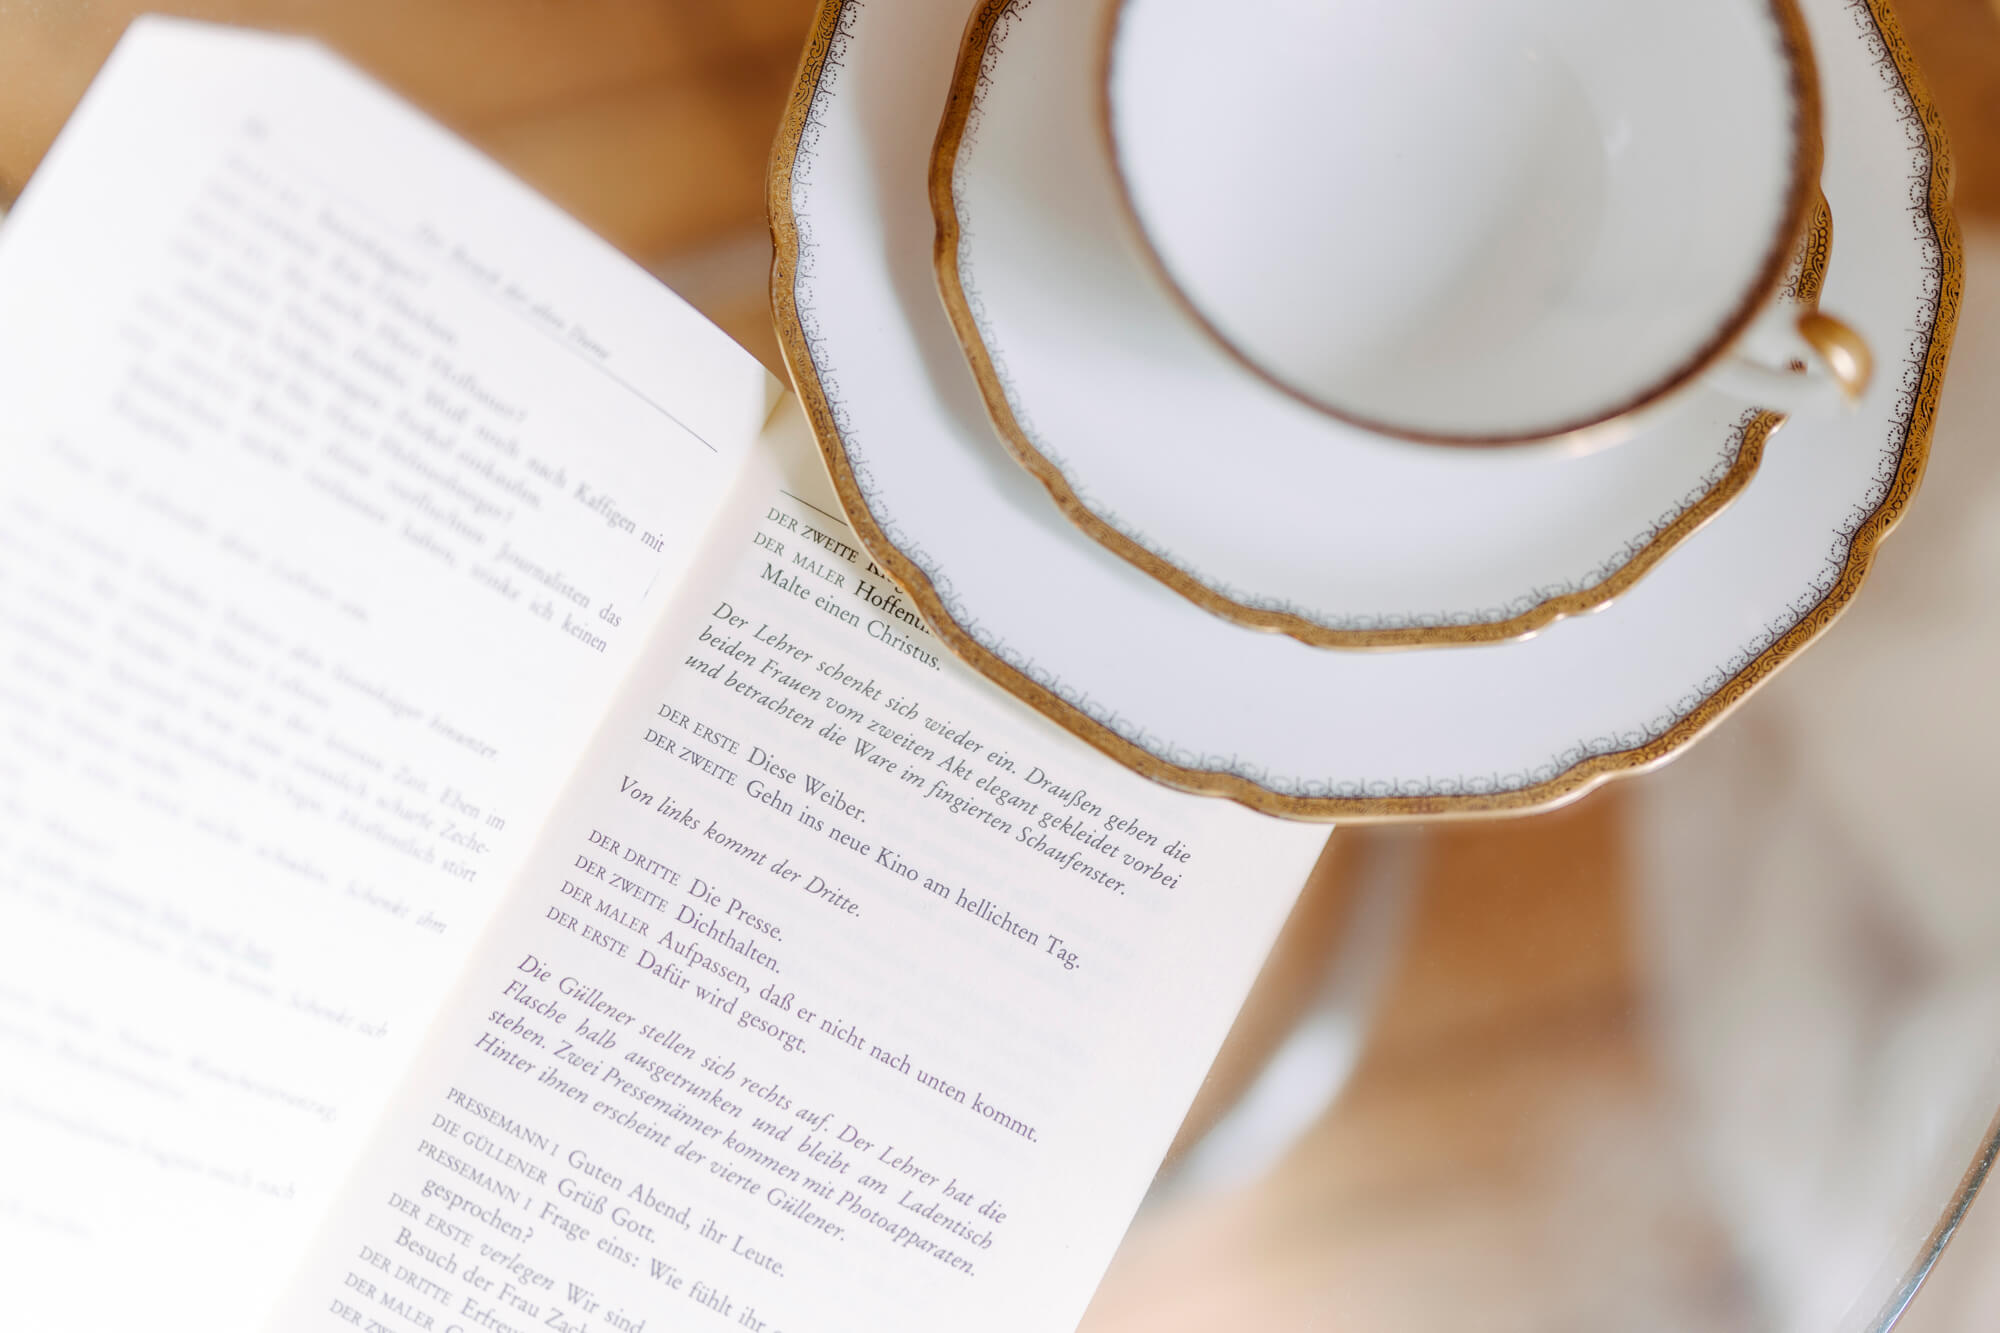 Lisa Treusch Fotografin Fotografie Mainz Detailaufnahme eines Buches und eine weißen Teetasse verziert mit Goldrändern